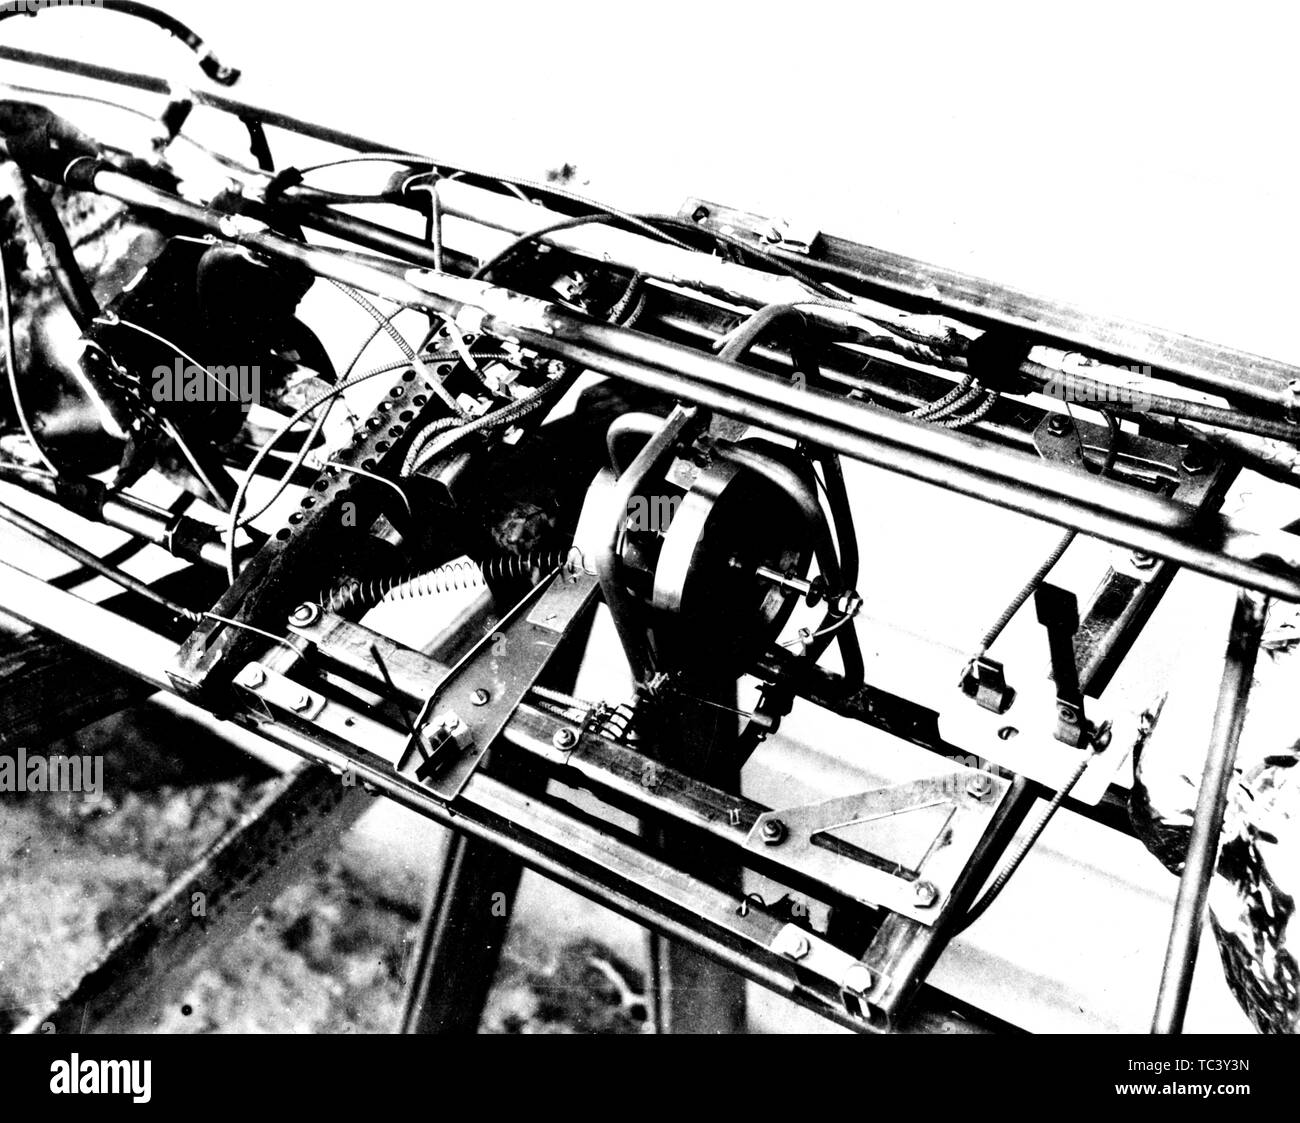 Close-up of Dr Robert H Goddard's gyroscope et pièces connexes utilisés dans la stabilisation de la fusée, 19 avril 1932. Droit avec la permission de la National Aeronautics and Space Administration (NASA). () Banque D'Images